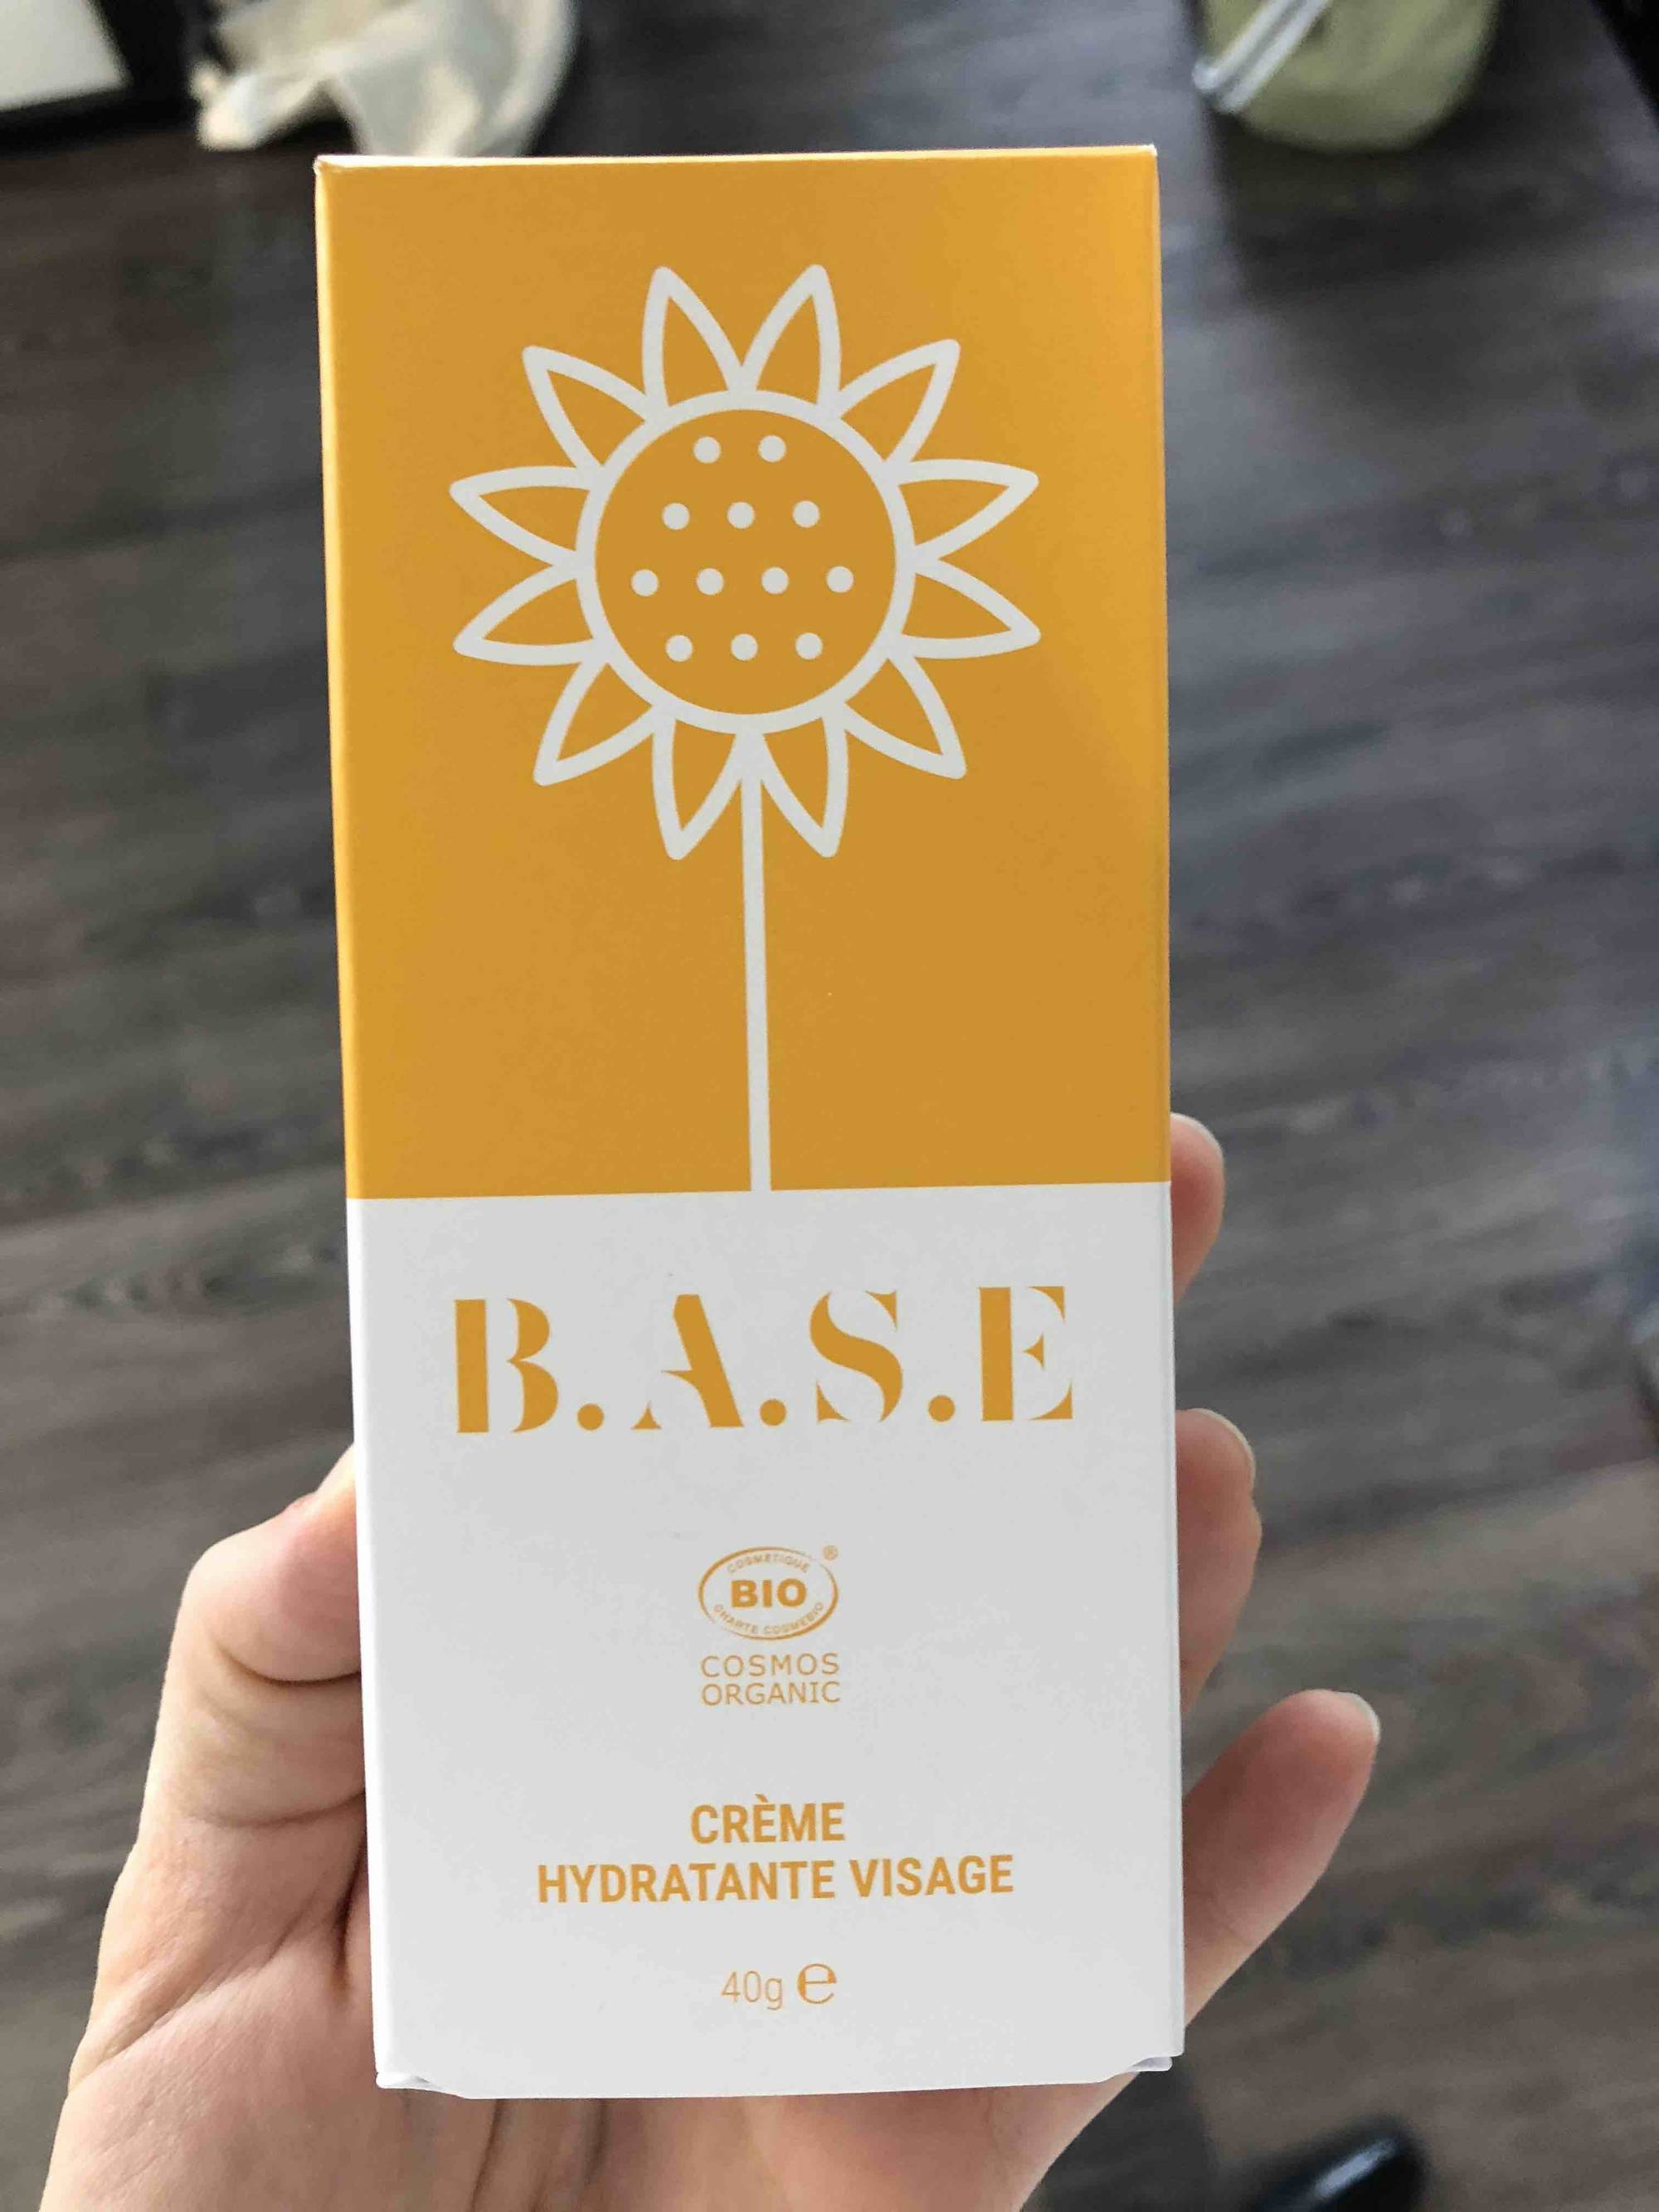 B.A.S.E - Crème hydratante visage